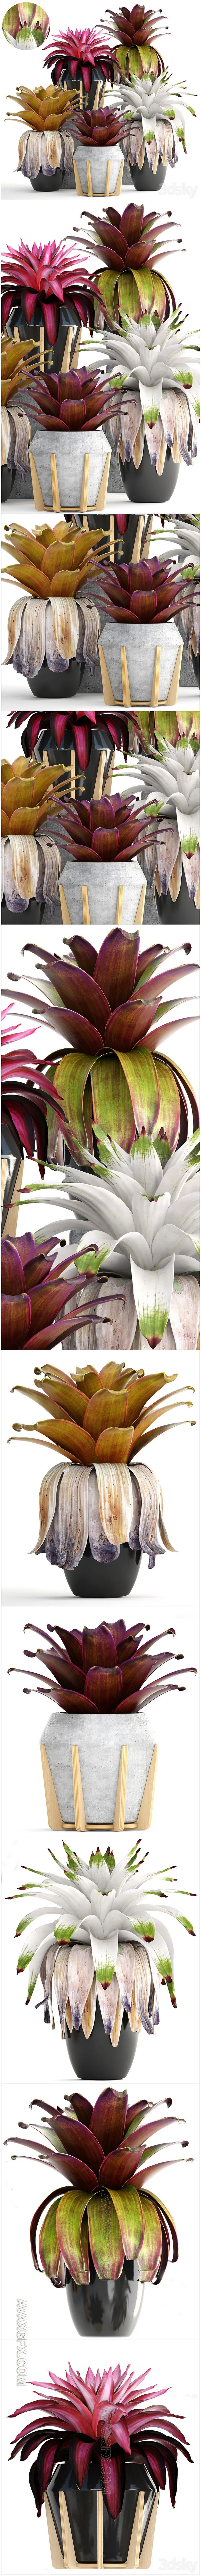 Collection of plants 153. Bromelia, Bush, Plants, Pot, Flowerpot, Bromeliad, Botanical, Garden, Decorative, Tropical - 3D Model